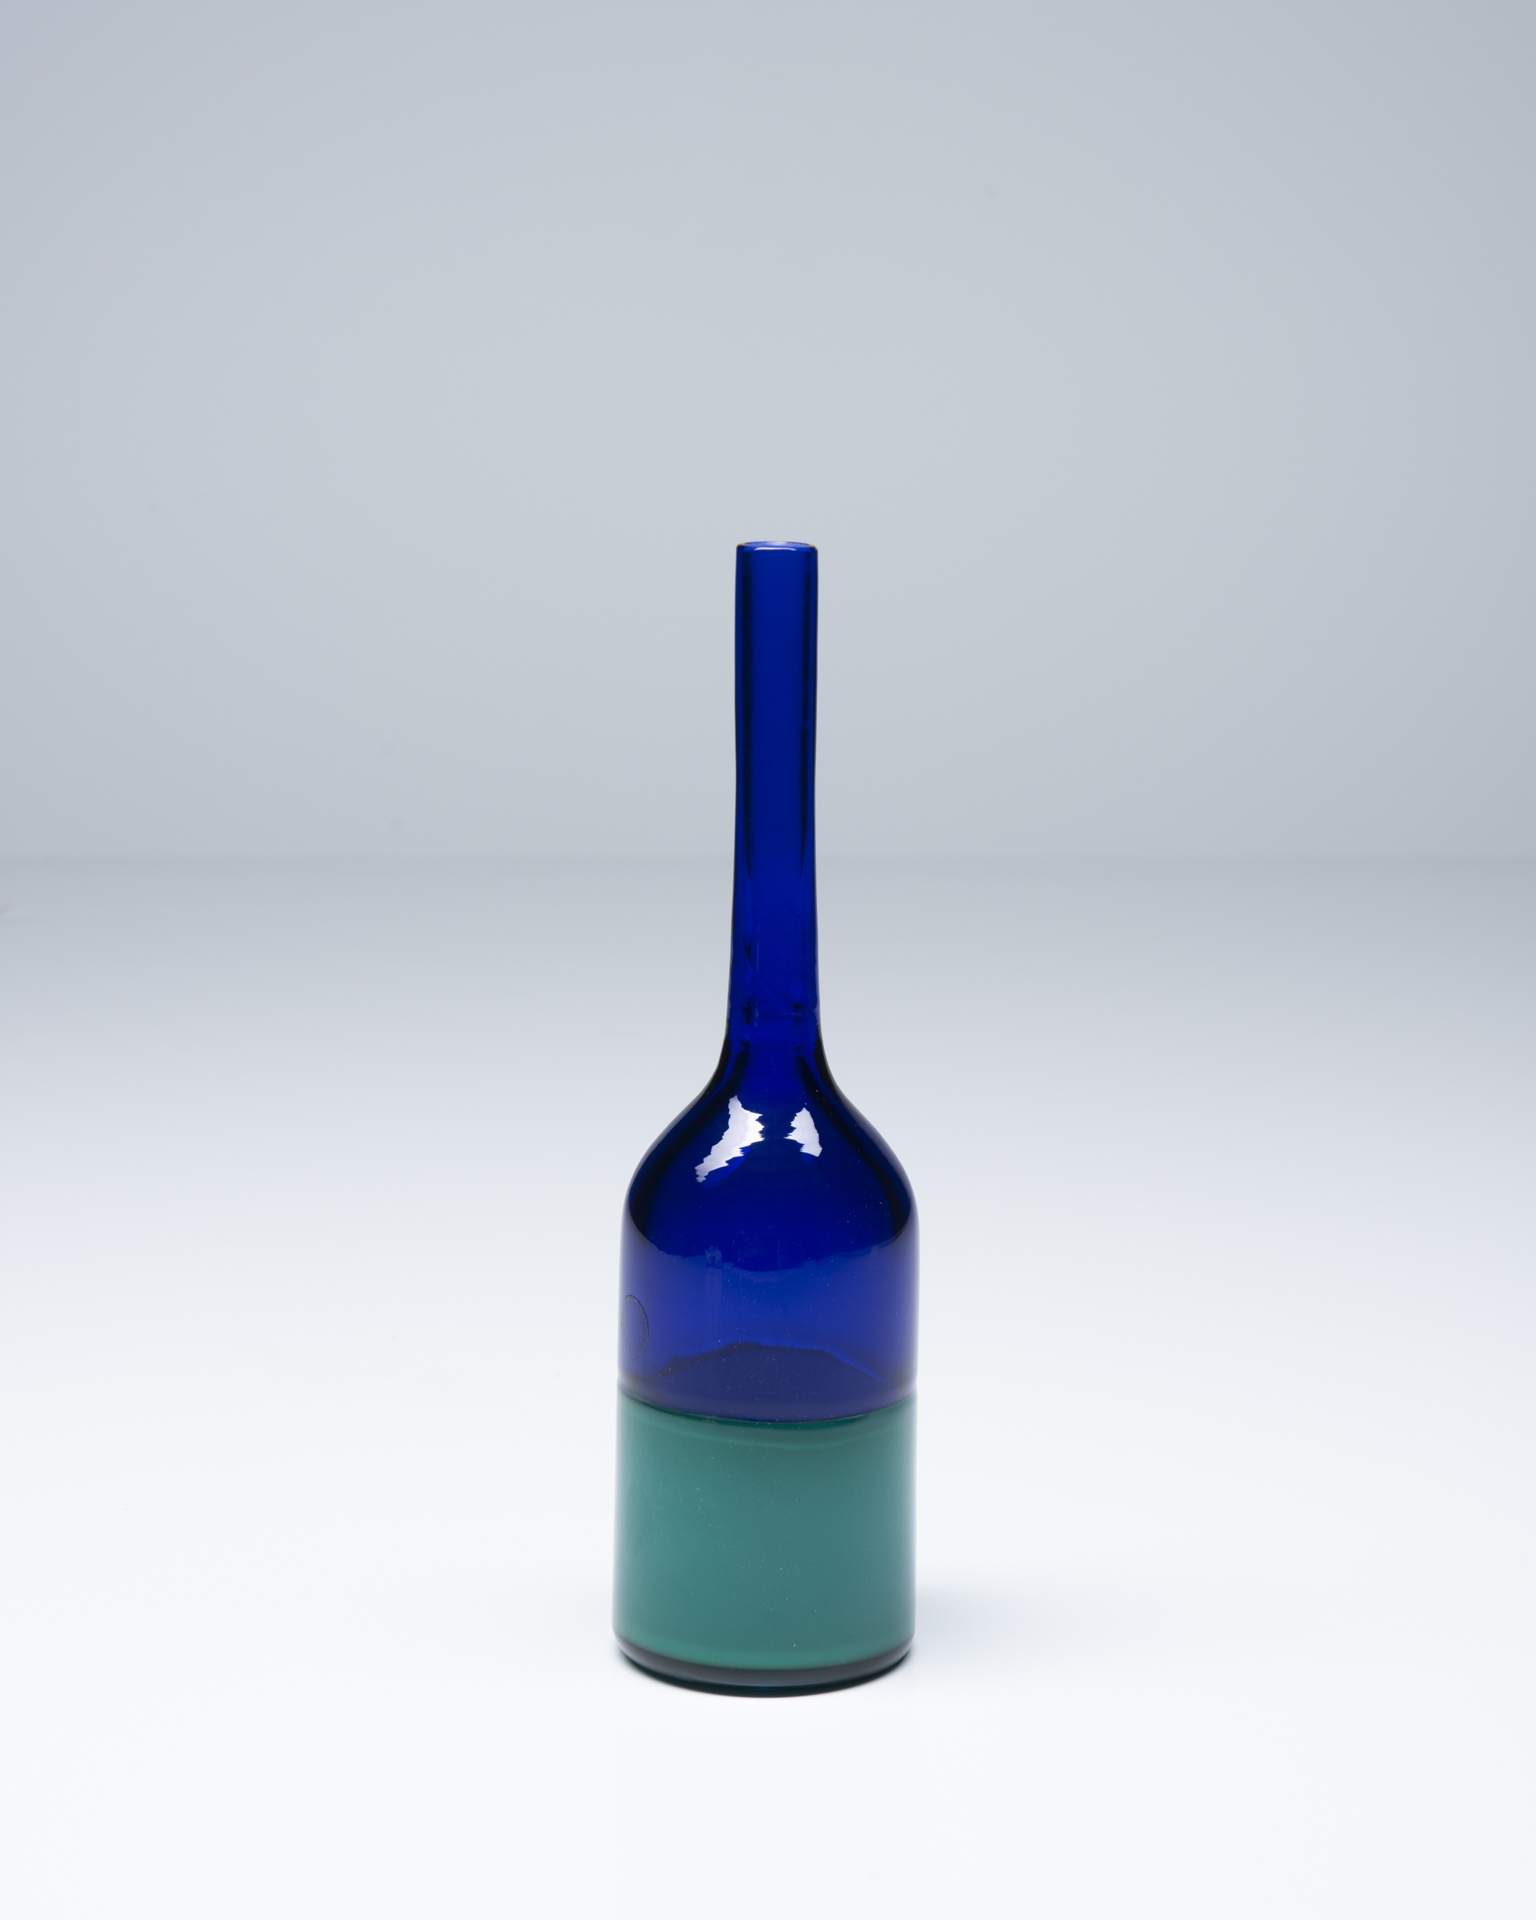 cs037venini-vase-green-and-blue0a-2